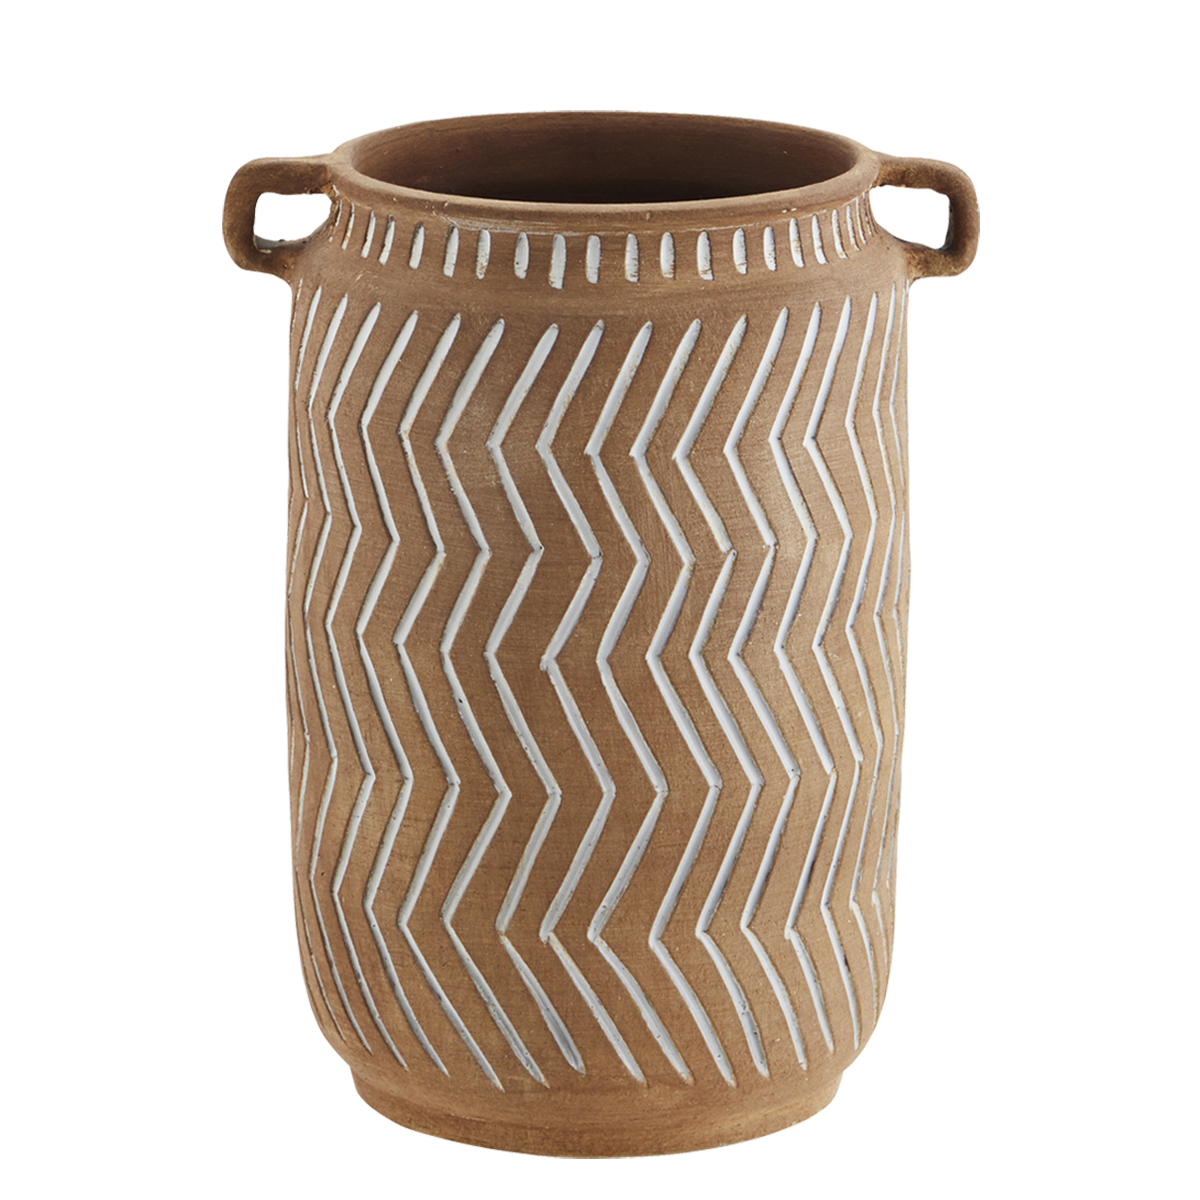 Terracotta vase w/ grooves